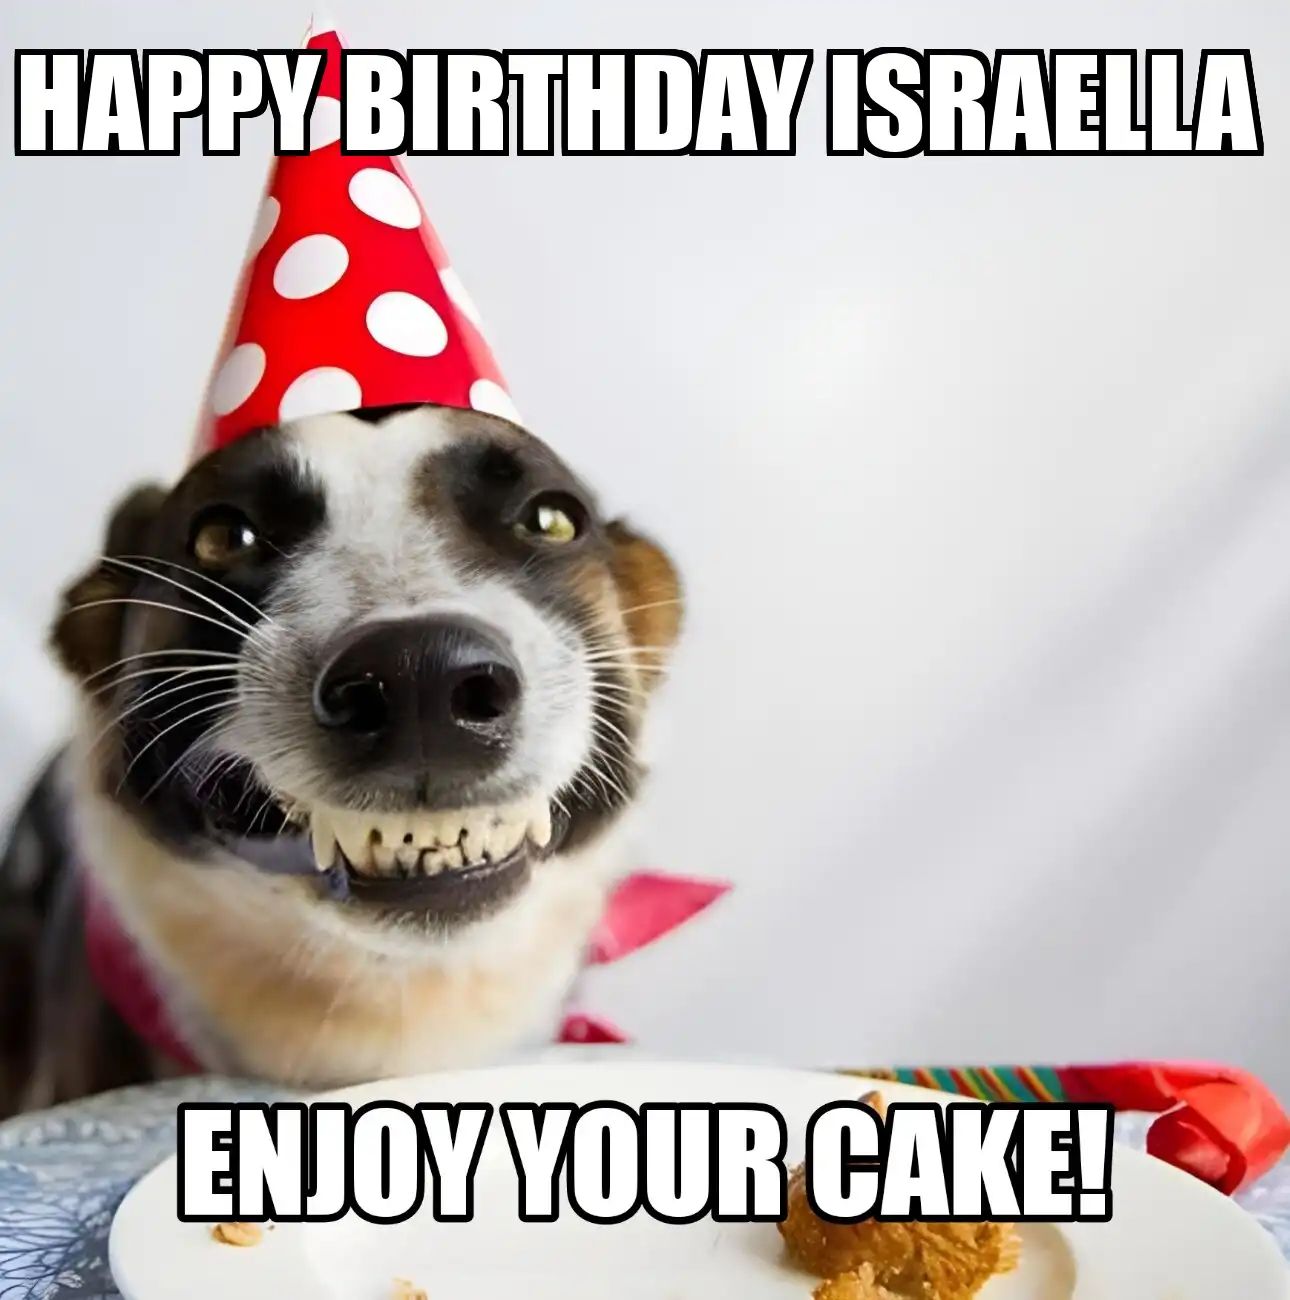 Happy Birthday Israella Enjoy Your Cake Dog Meme